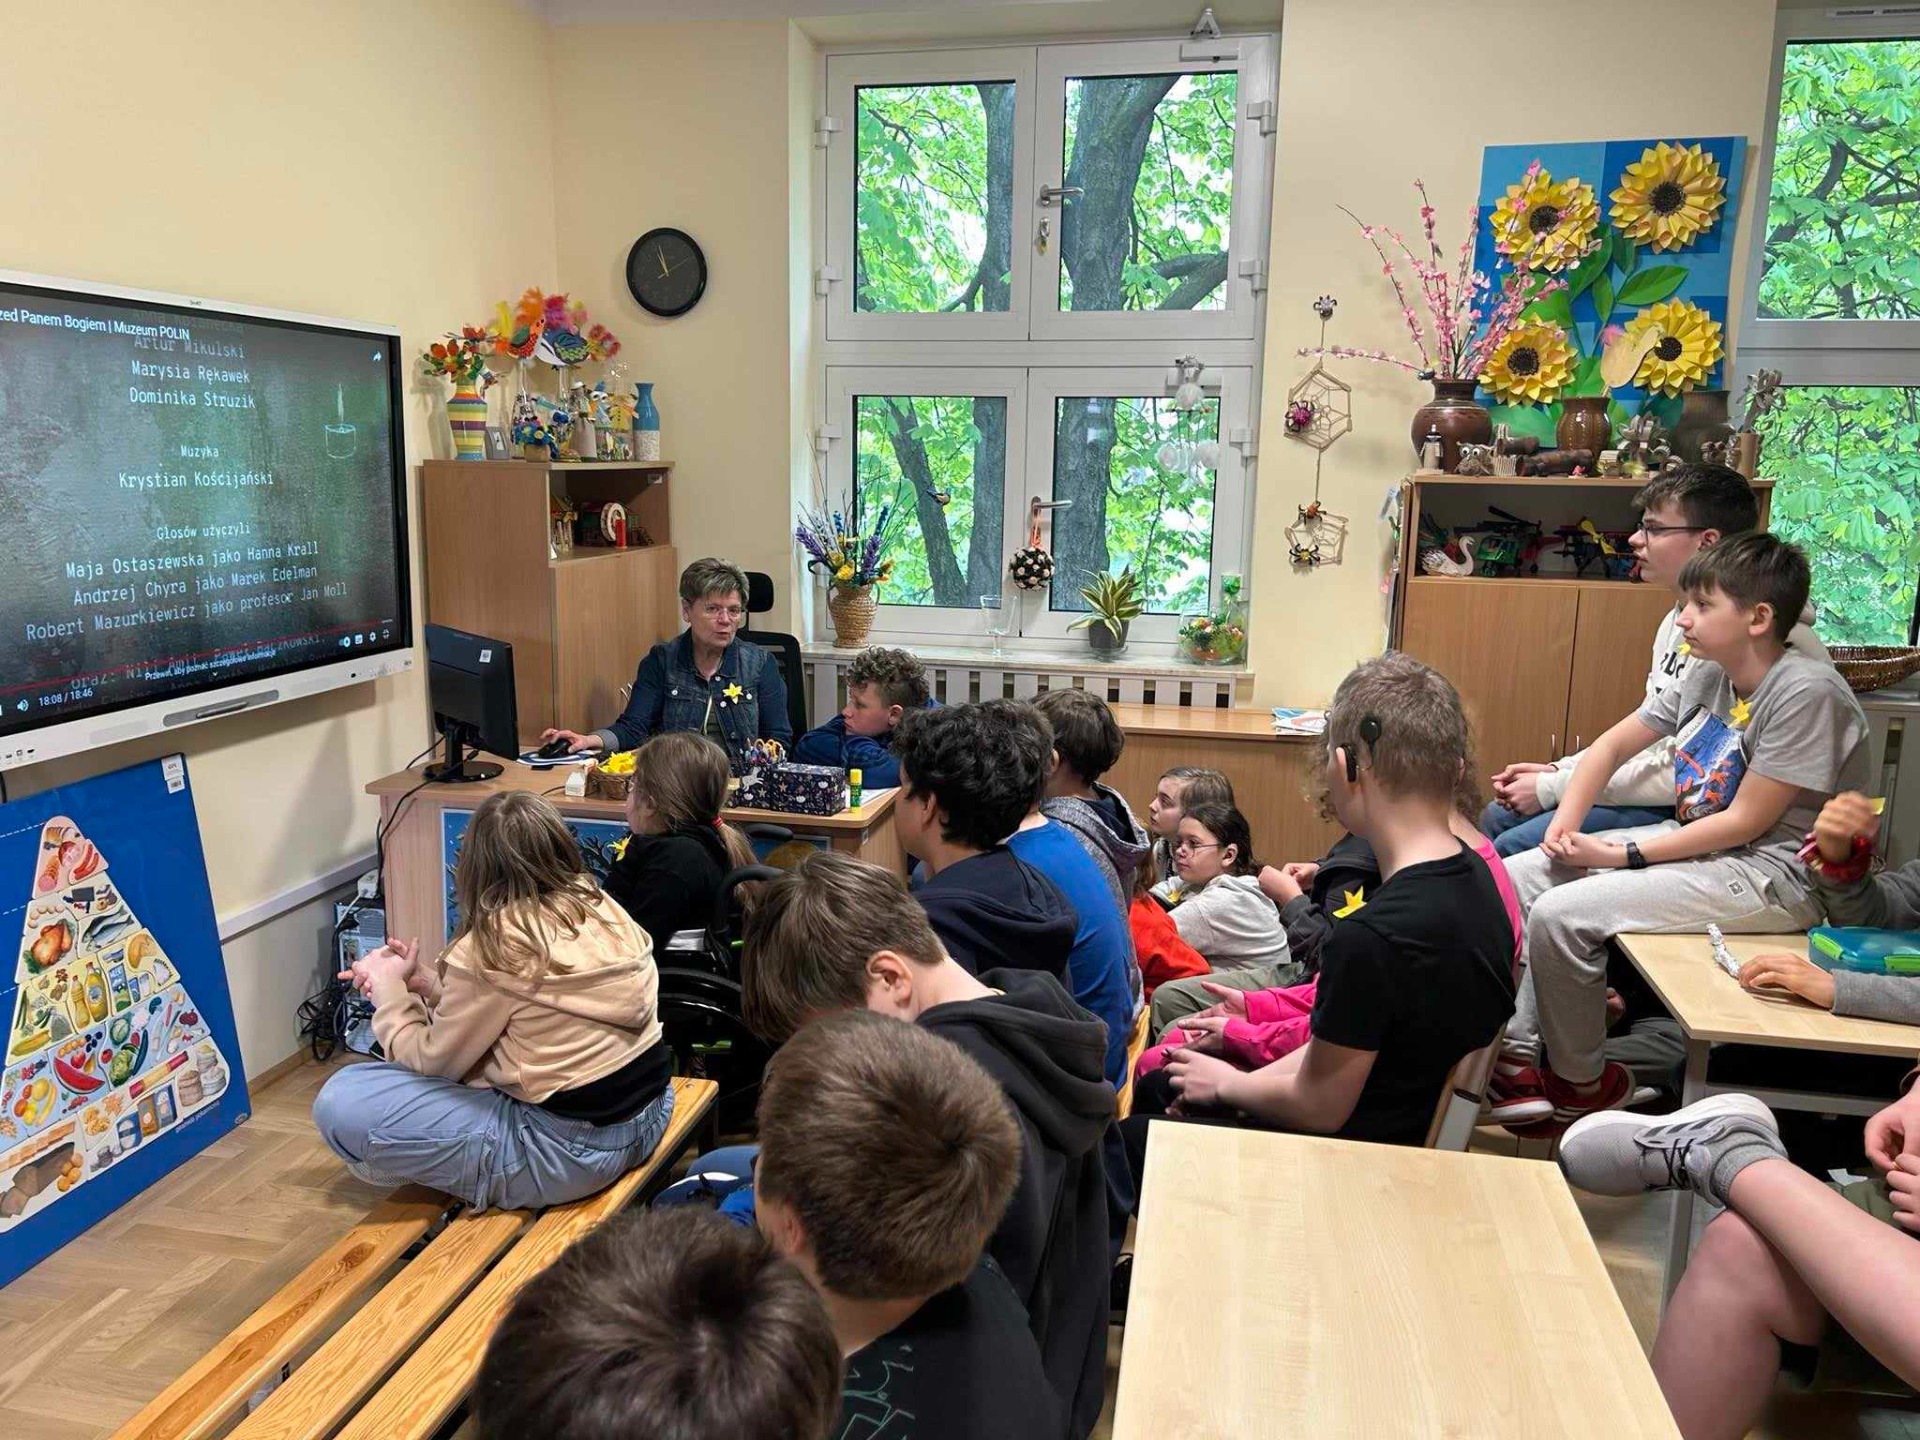 Uczniowie oglądający wiadomości na tablicy interaktywnej. 